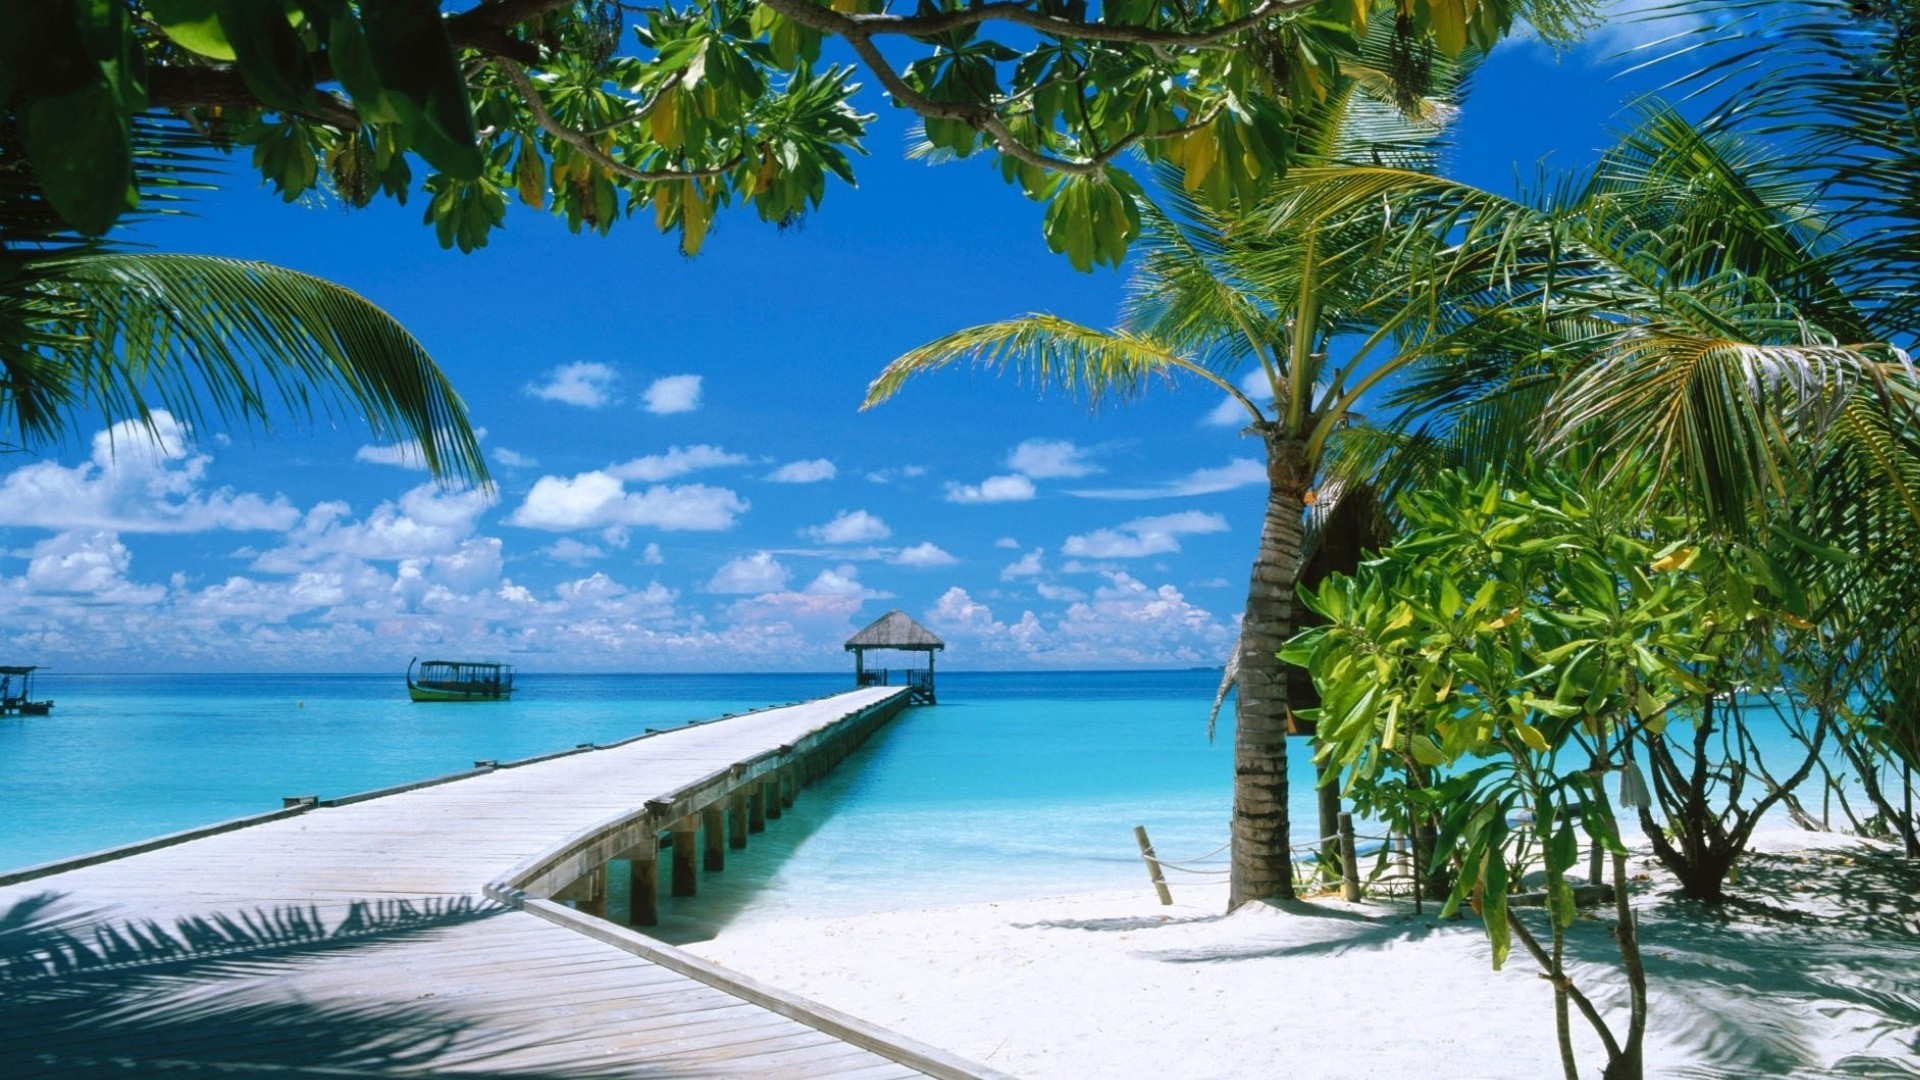 Descarga gratuita de fondo de pantalla para móvil de Mar, Playa, Verano, Muelle, Zona Tropical, Fotografía, Maldivas, Tropico.